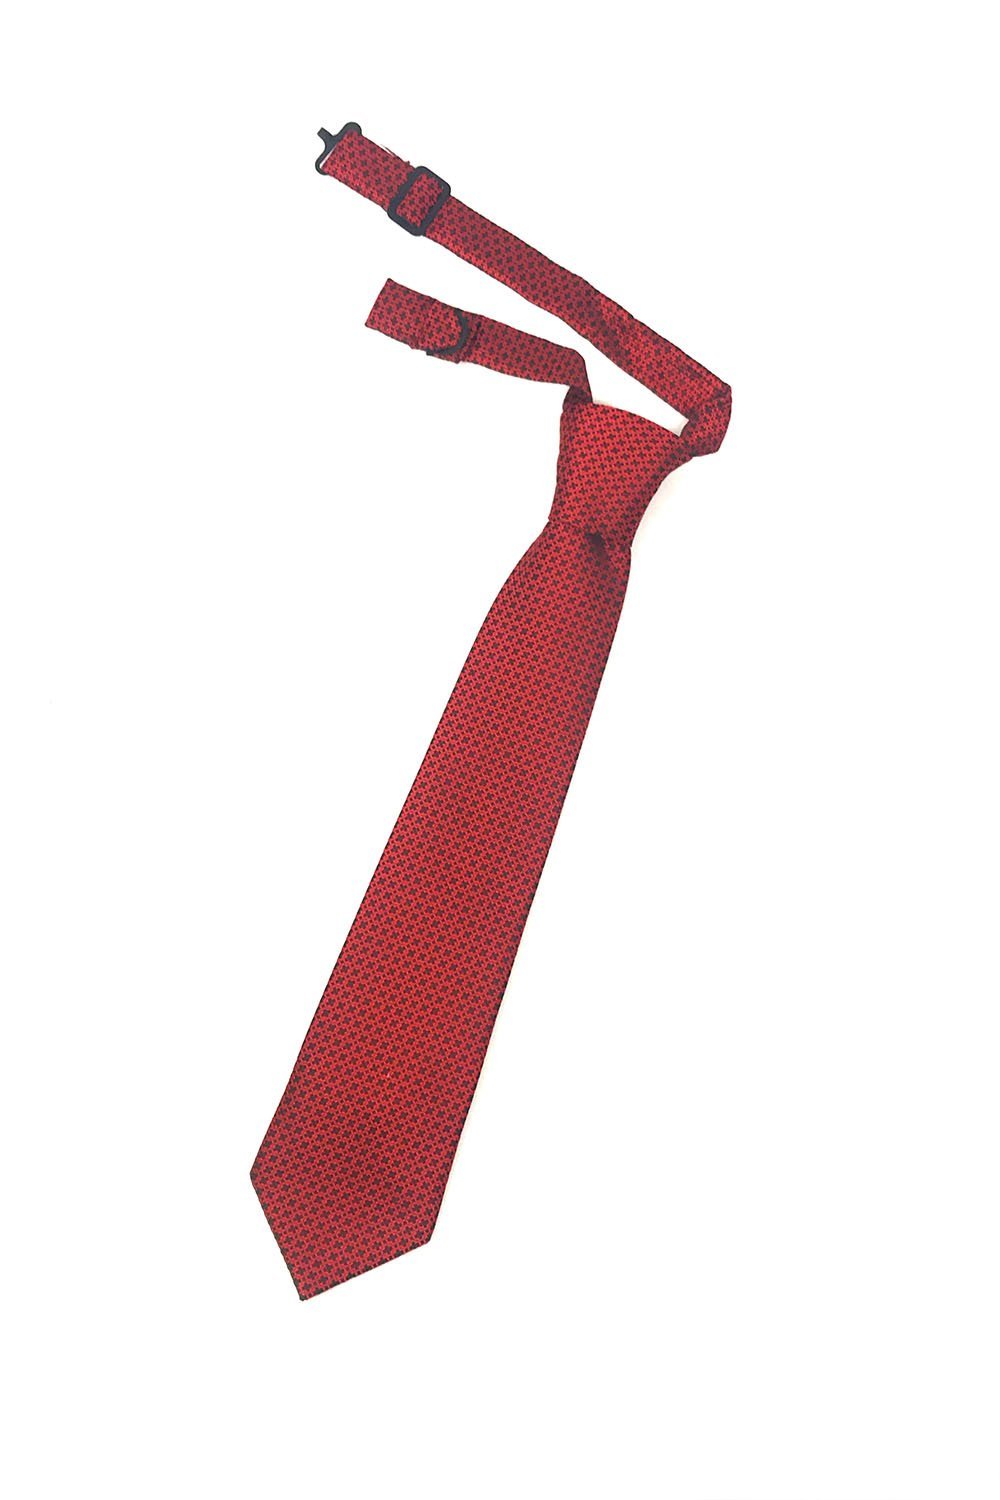 Cardi Red Regal Kids Necktie